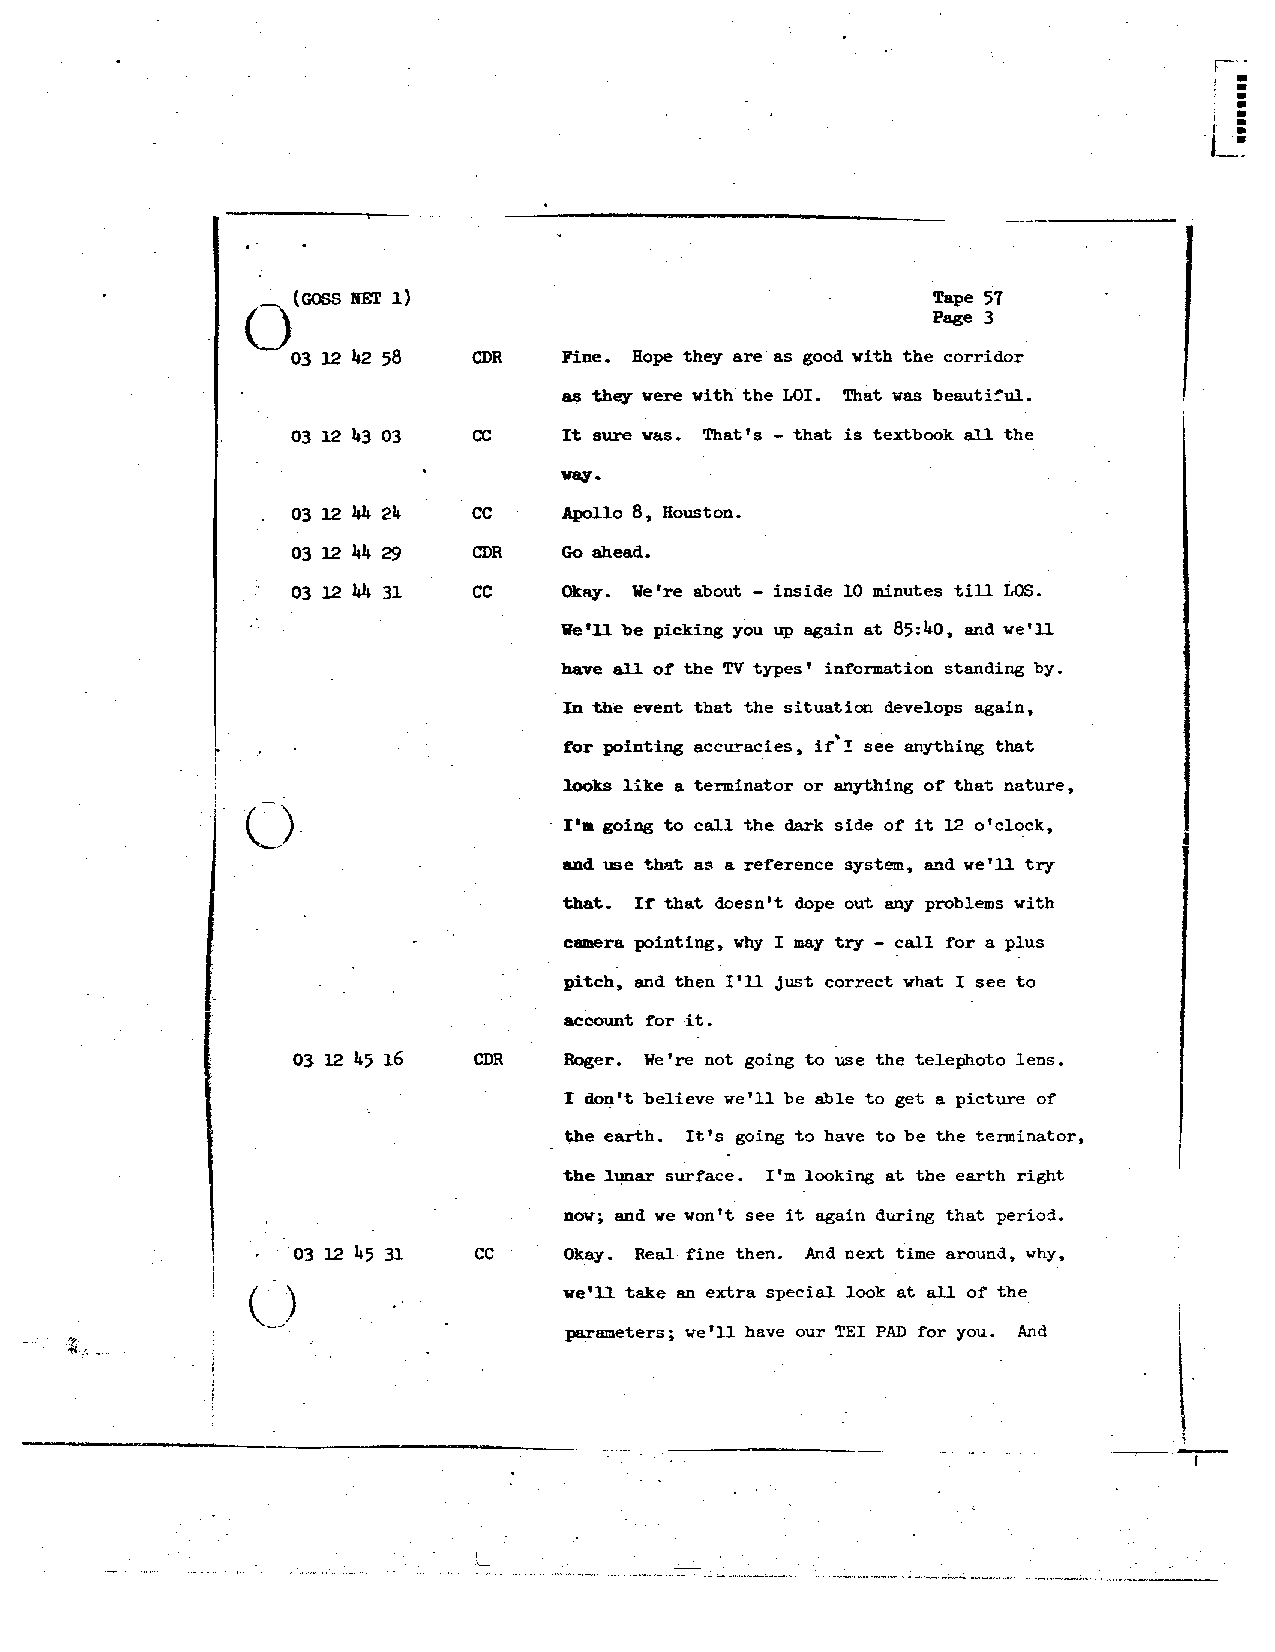 Page 452 of Apollo 8’s original transcript